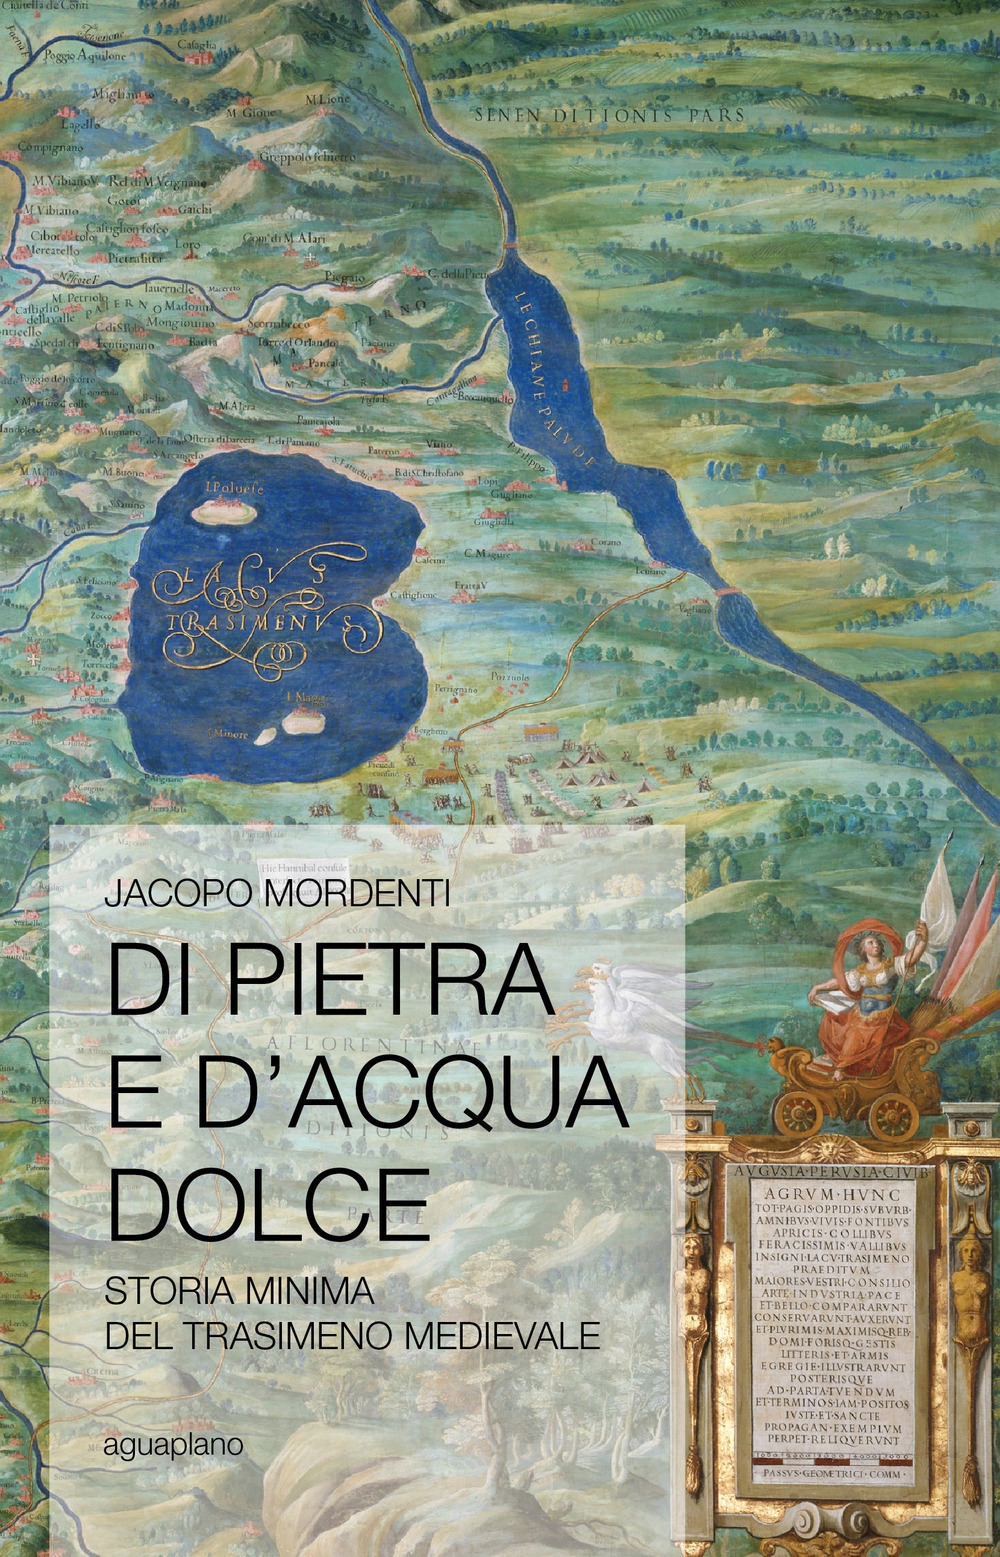 copertina-del-libro-di-pietra-e-dacqua-dolce-aguaplano-libri-perugia